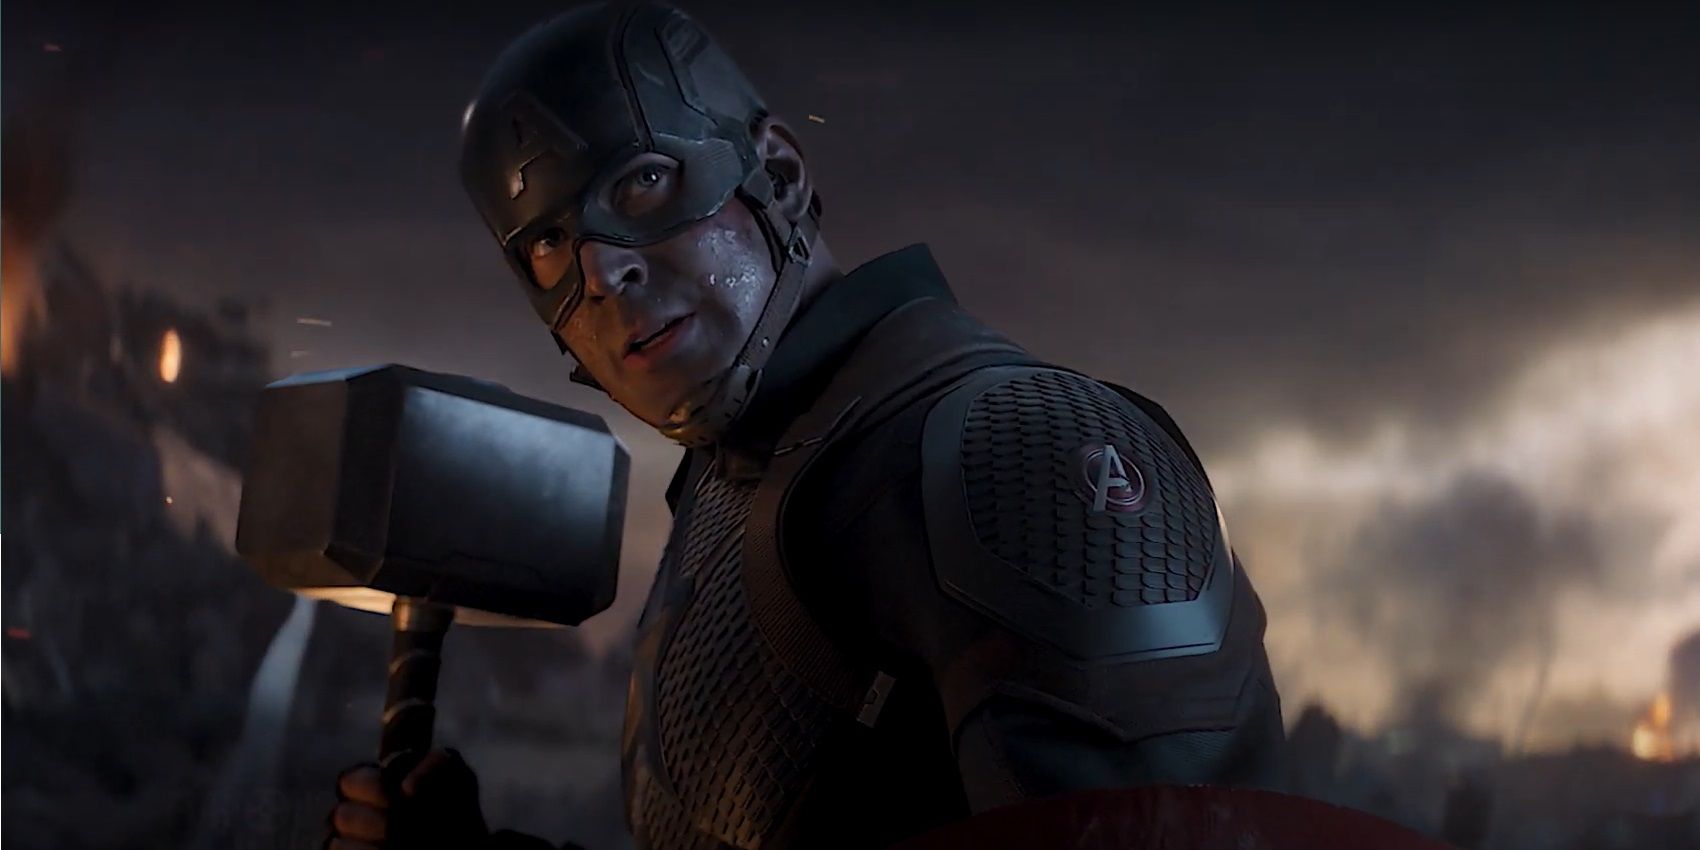 Captain America wields Thor's hammer in Avengers: Endgame